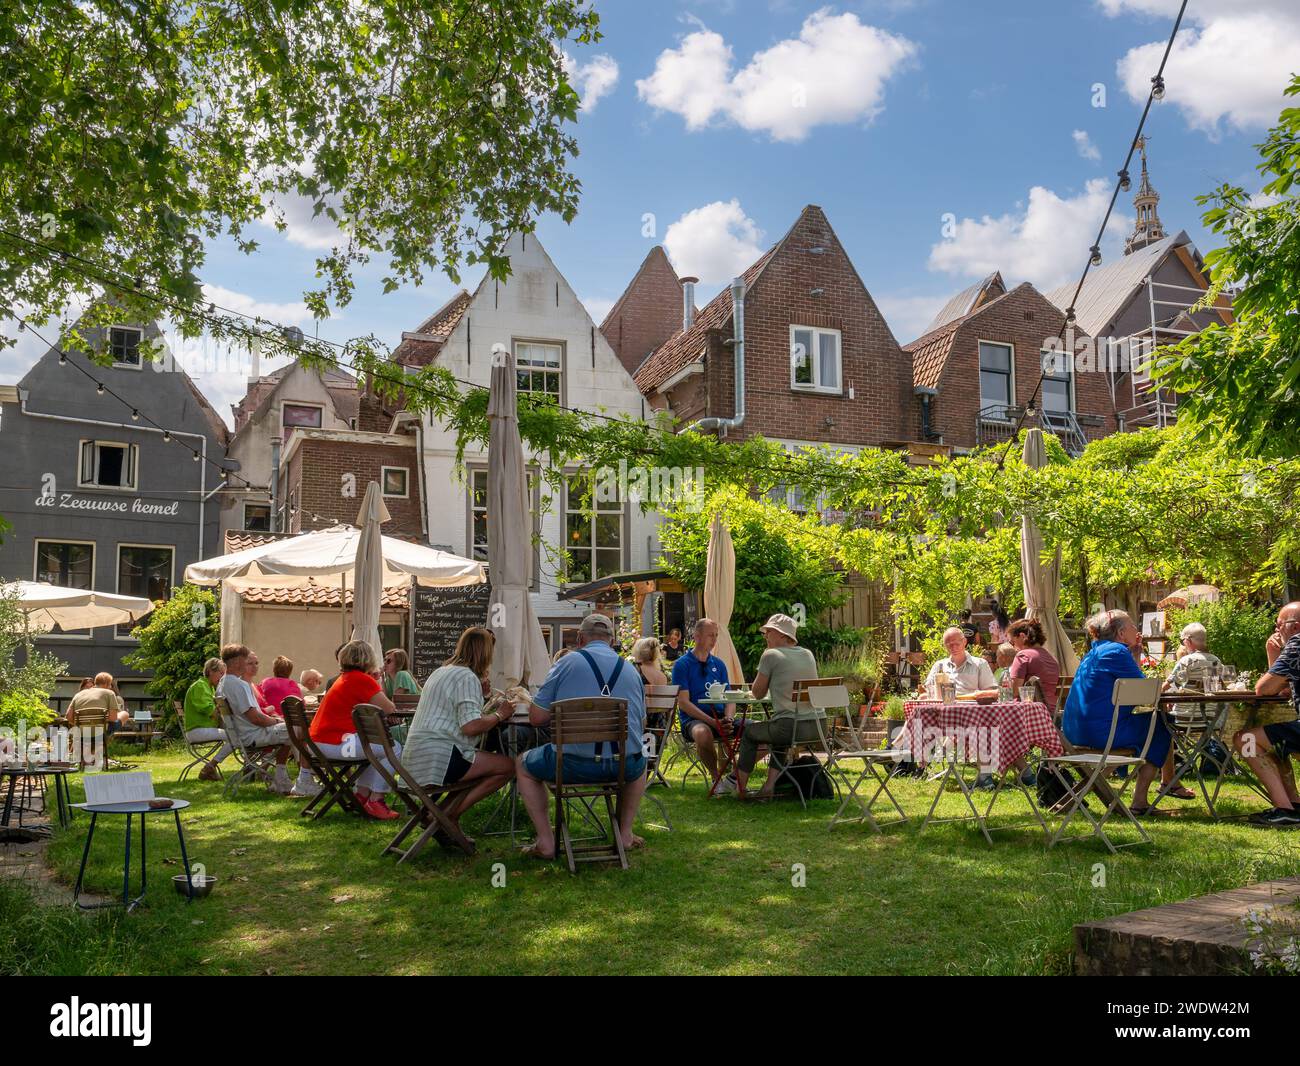 People relaxing on terrace in old town of Zierikzee, Schouwen-Duiveland, Zeeland, Netherlands Stock Photo